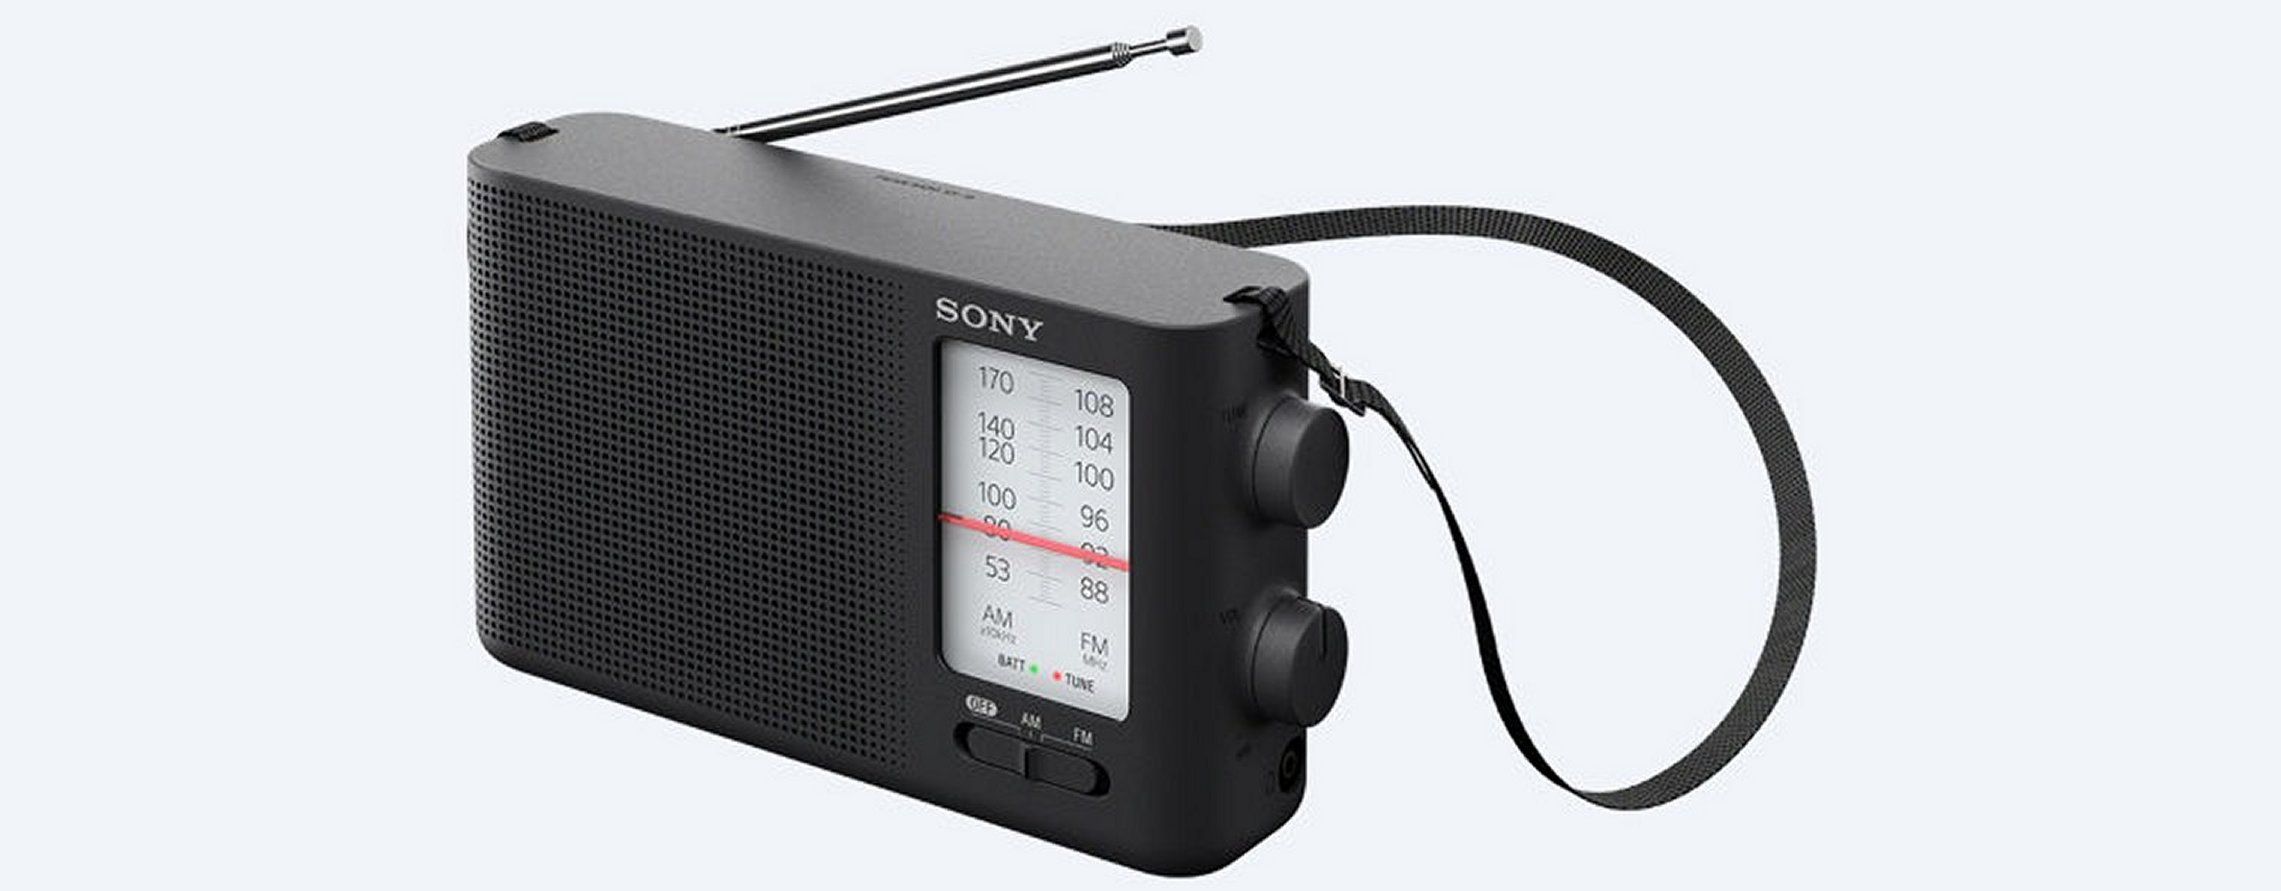 Three Sony AM/FM Radios – ICF-506 – ICF-19 – ICF-801 | radiojayallen